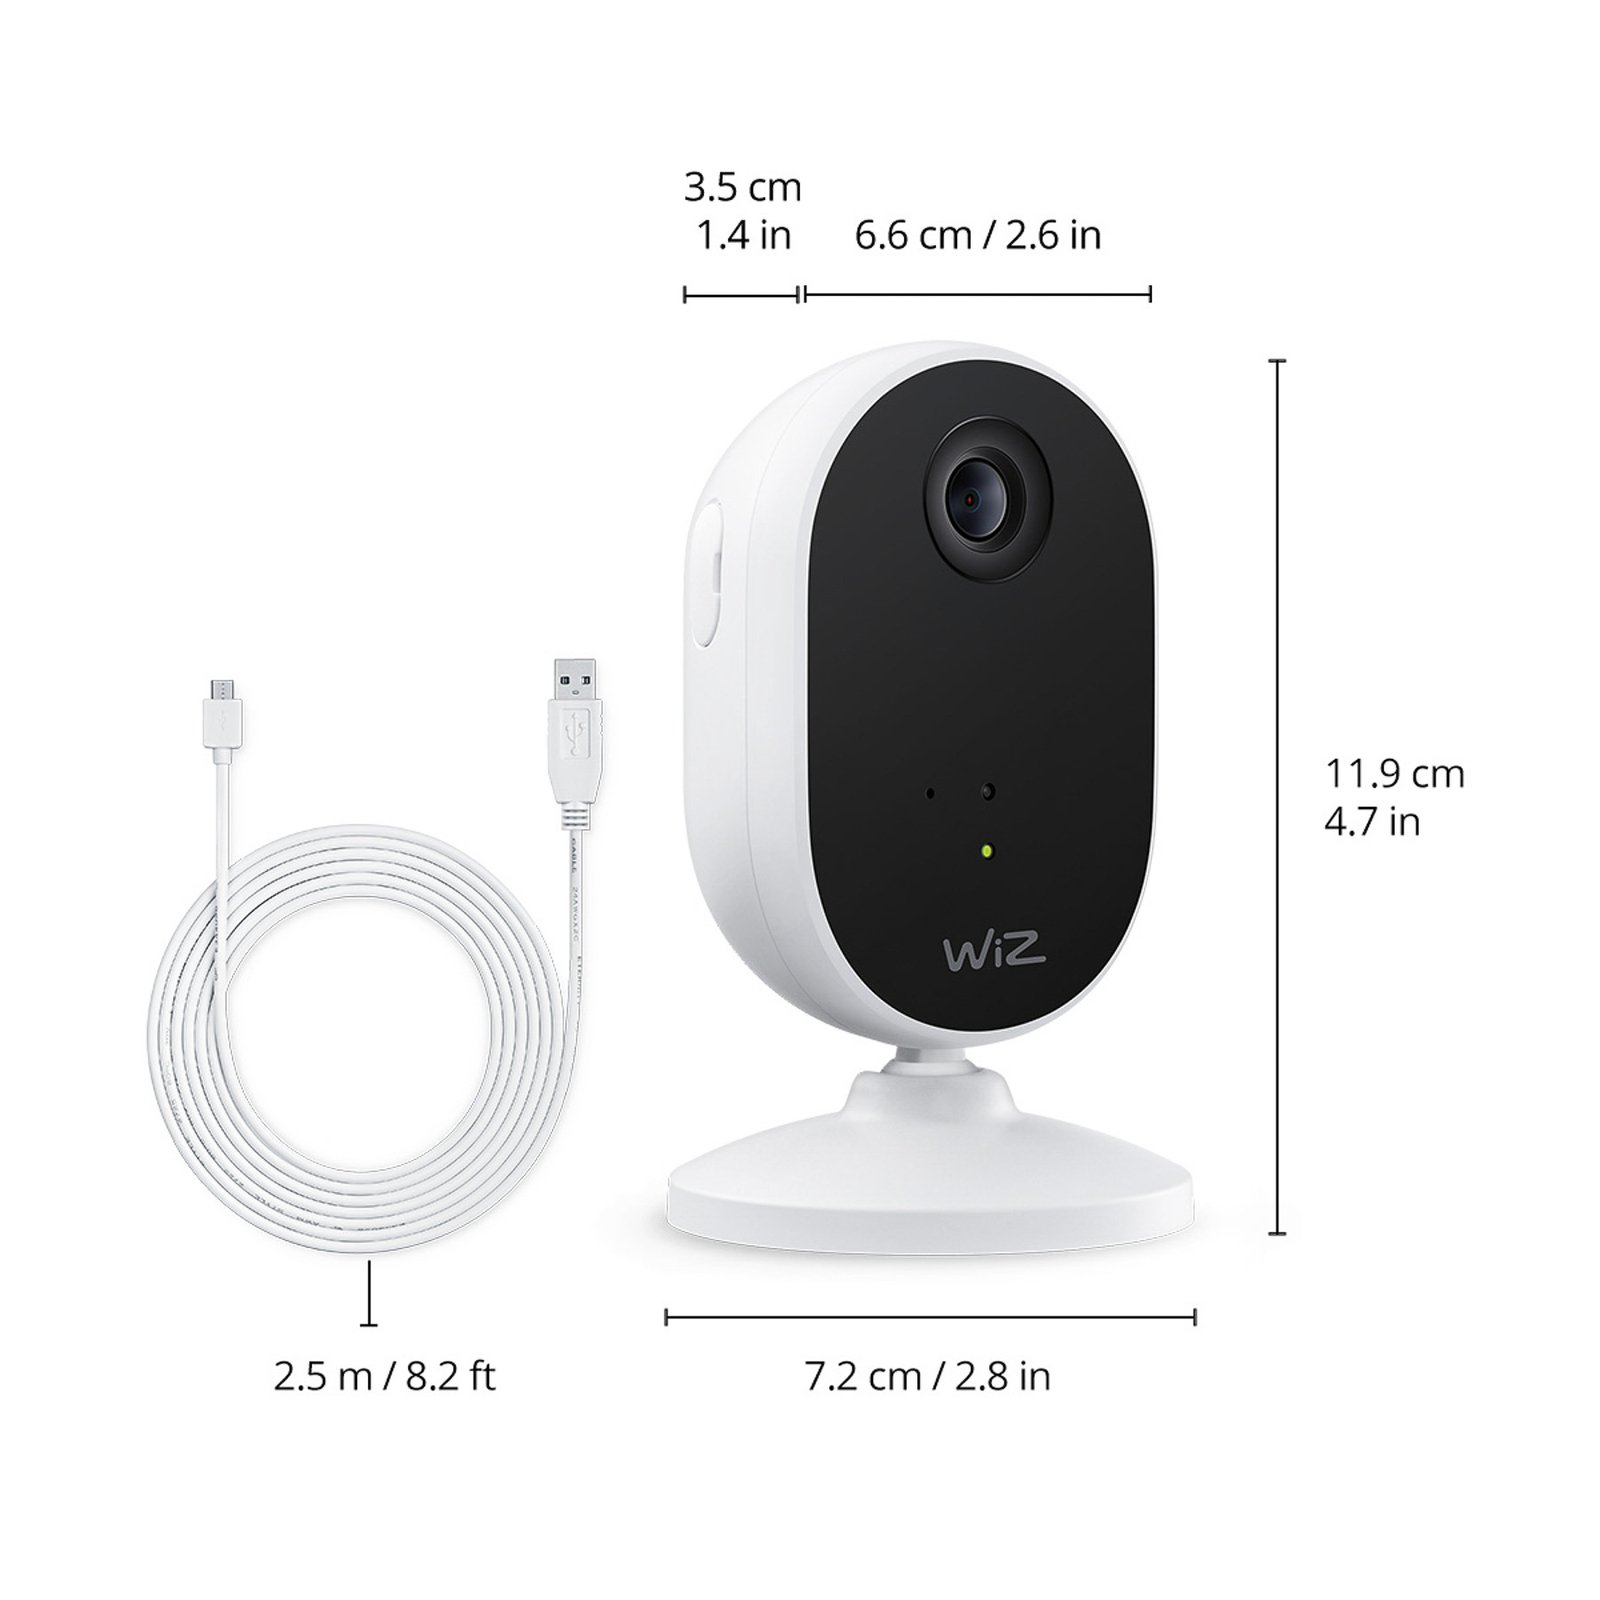 WiZ indoor Security camera met Wi-Fi